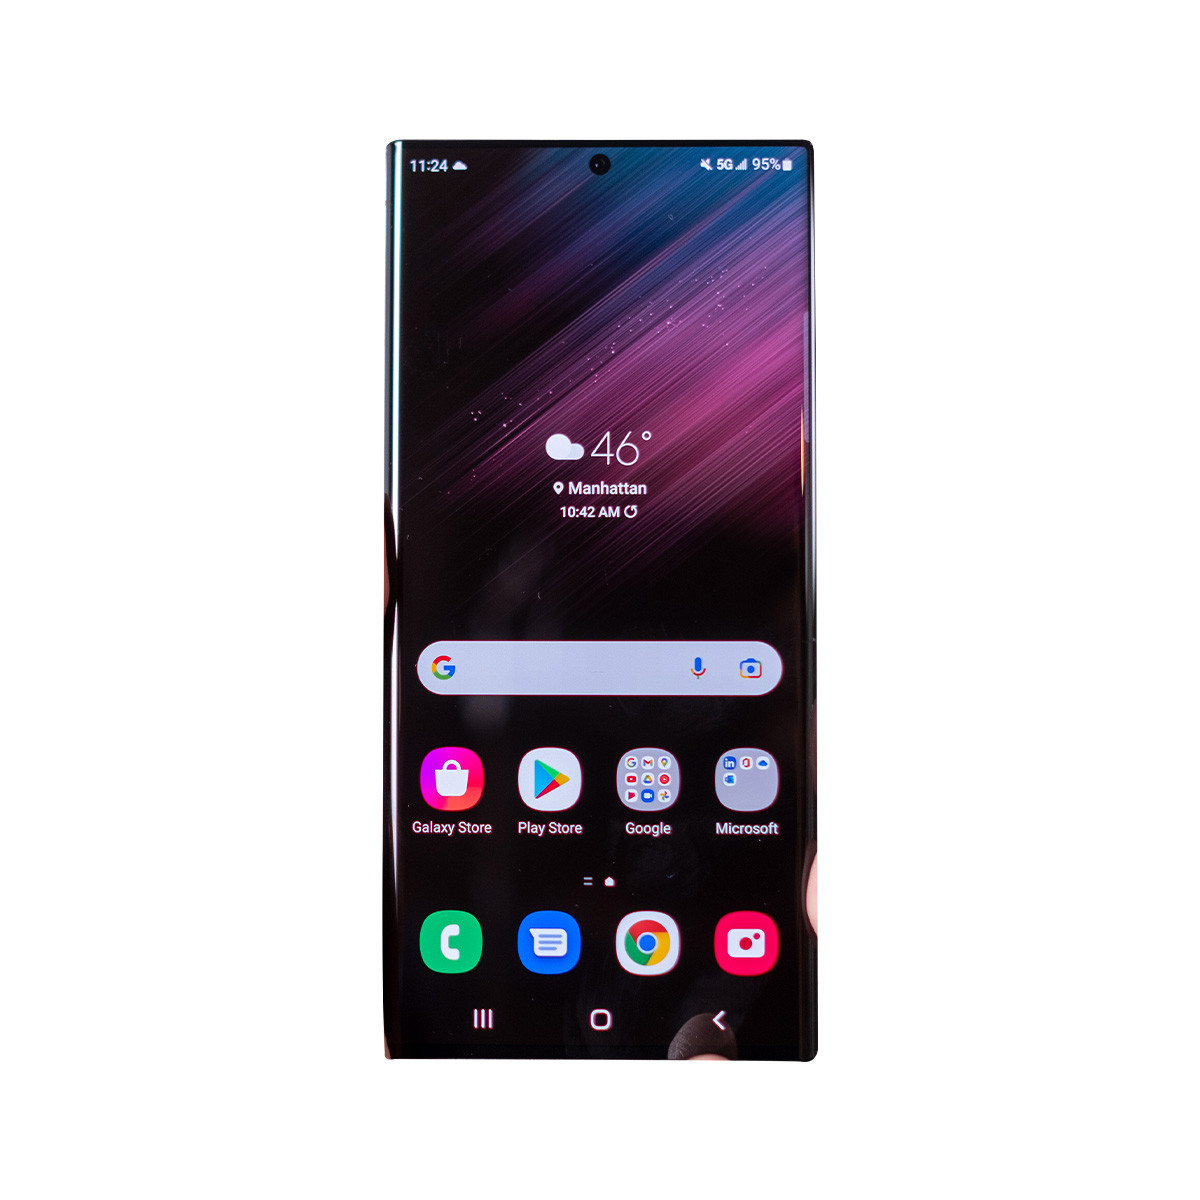 Thay màn hình Samsung S22 Ultra - Bạn đang gặp vấn đề về màn hình điện thoại Samsung S22 Ultra? Đừng lo, chúng tôi có đội ngũ kỹ thuật viên chuyên nghiệp, sẵn sàng đáp ứng nhu cầu của bạn. Cùng xem qua quy trình thay màn hình Samsung S22 Ultra để hiểu thêm về dịch vụ của chúng tôi.